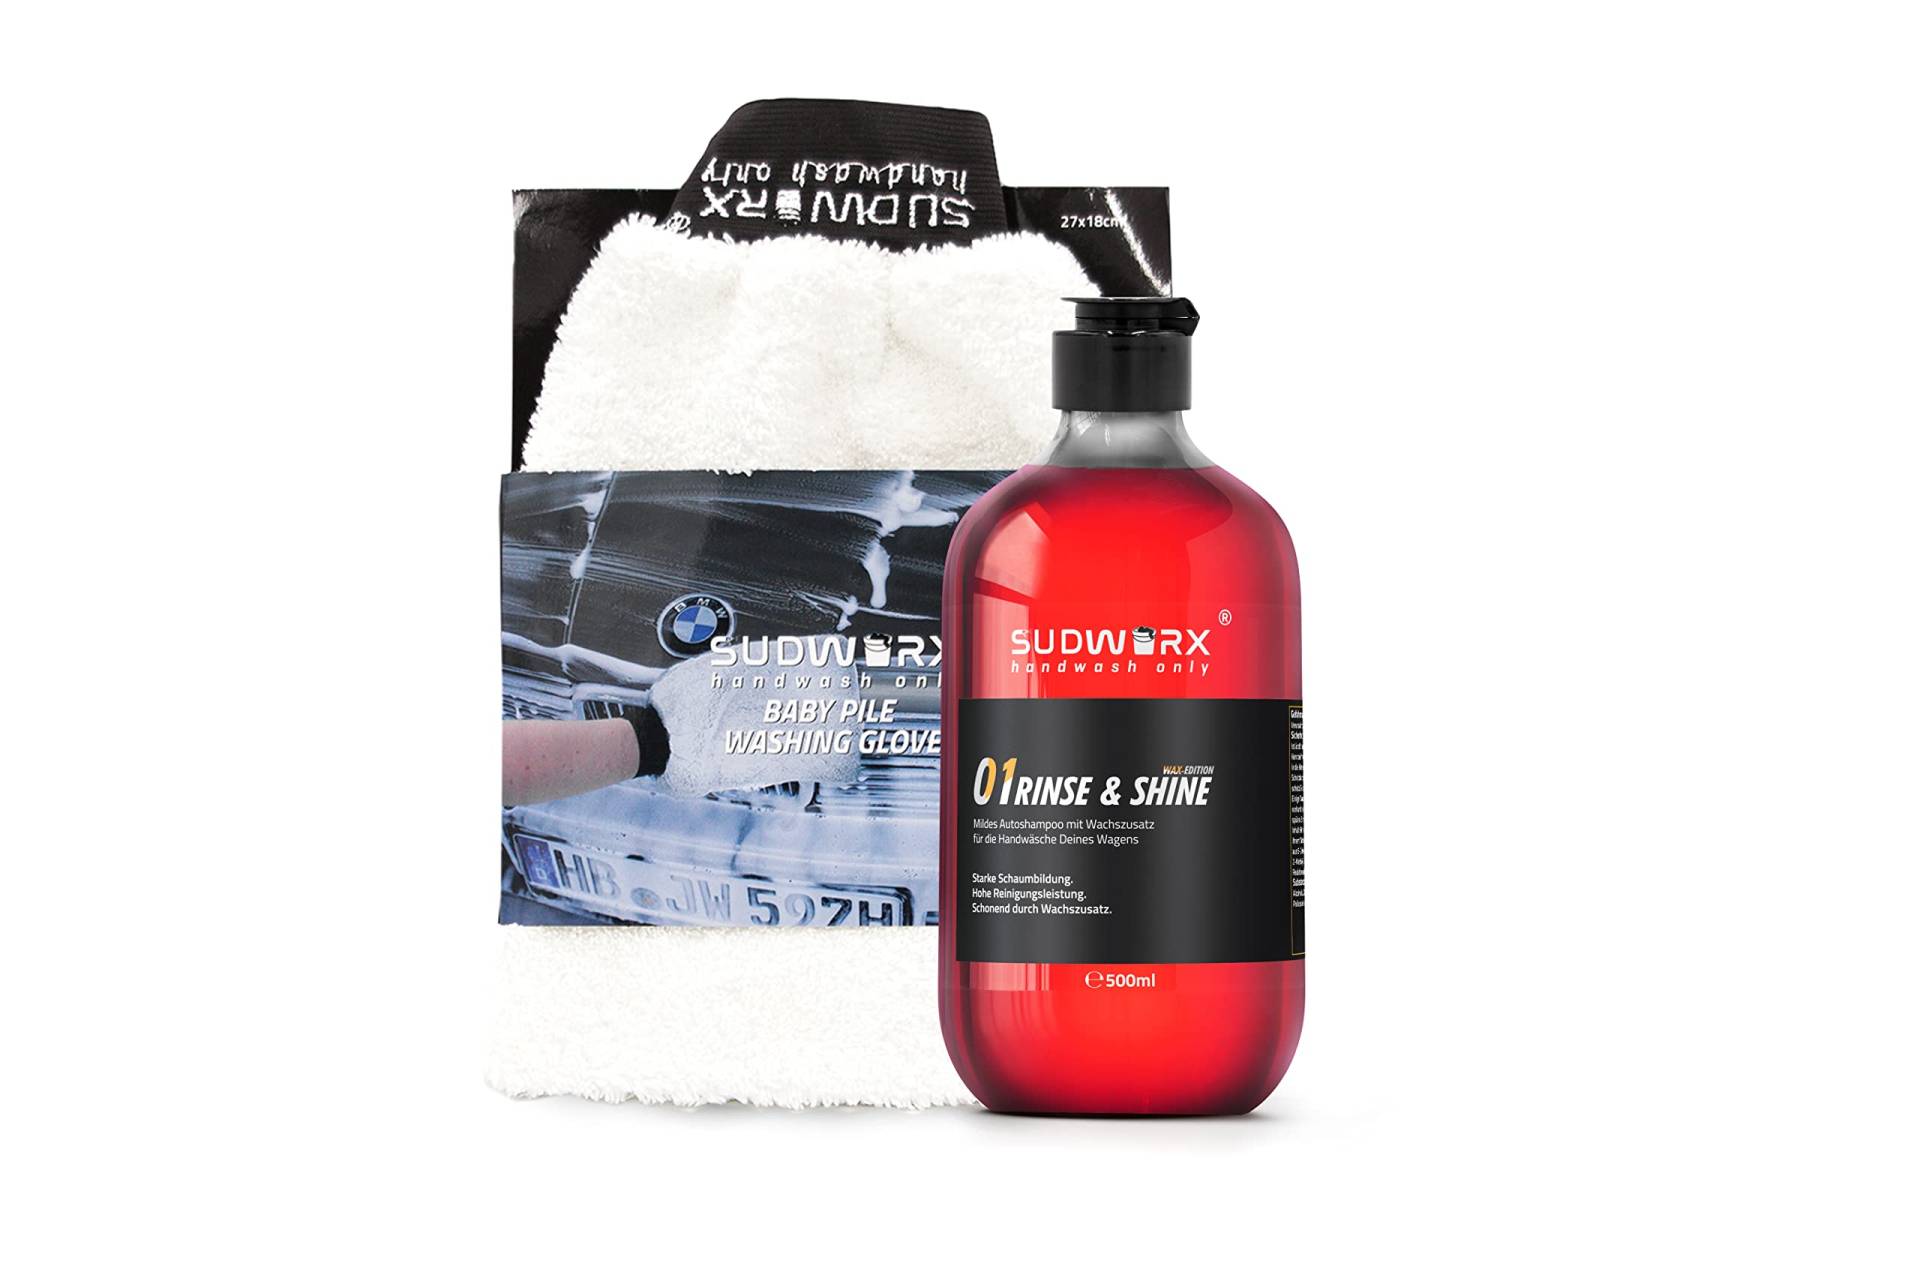 sudworx 01 RINSE & SHINE WAX EDITION Autoshampoo (Autoshampoo + Waschhandschuh Baby Pile) von sudworx